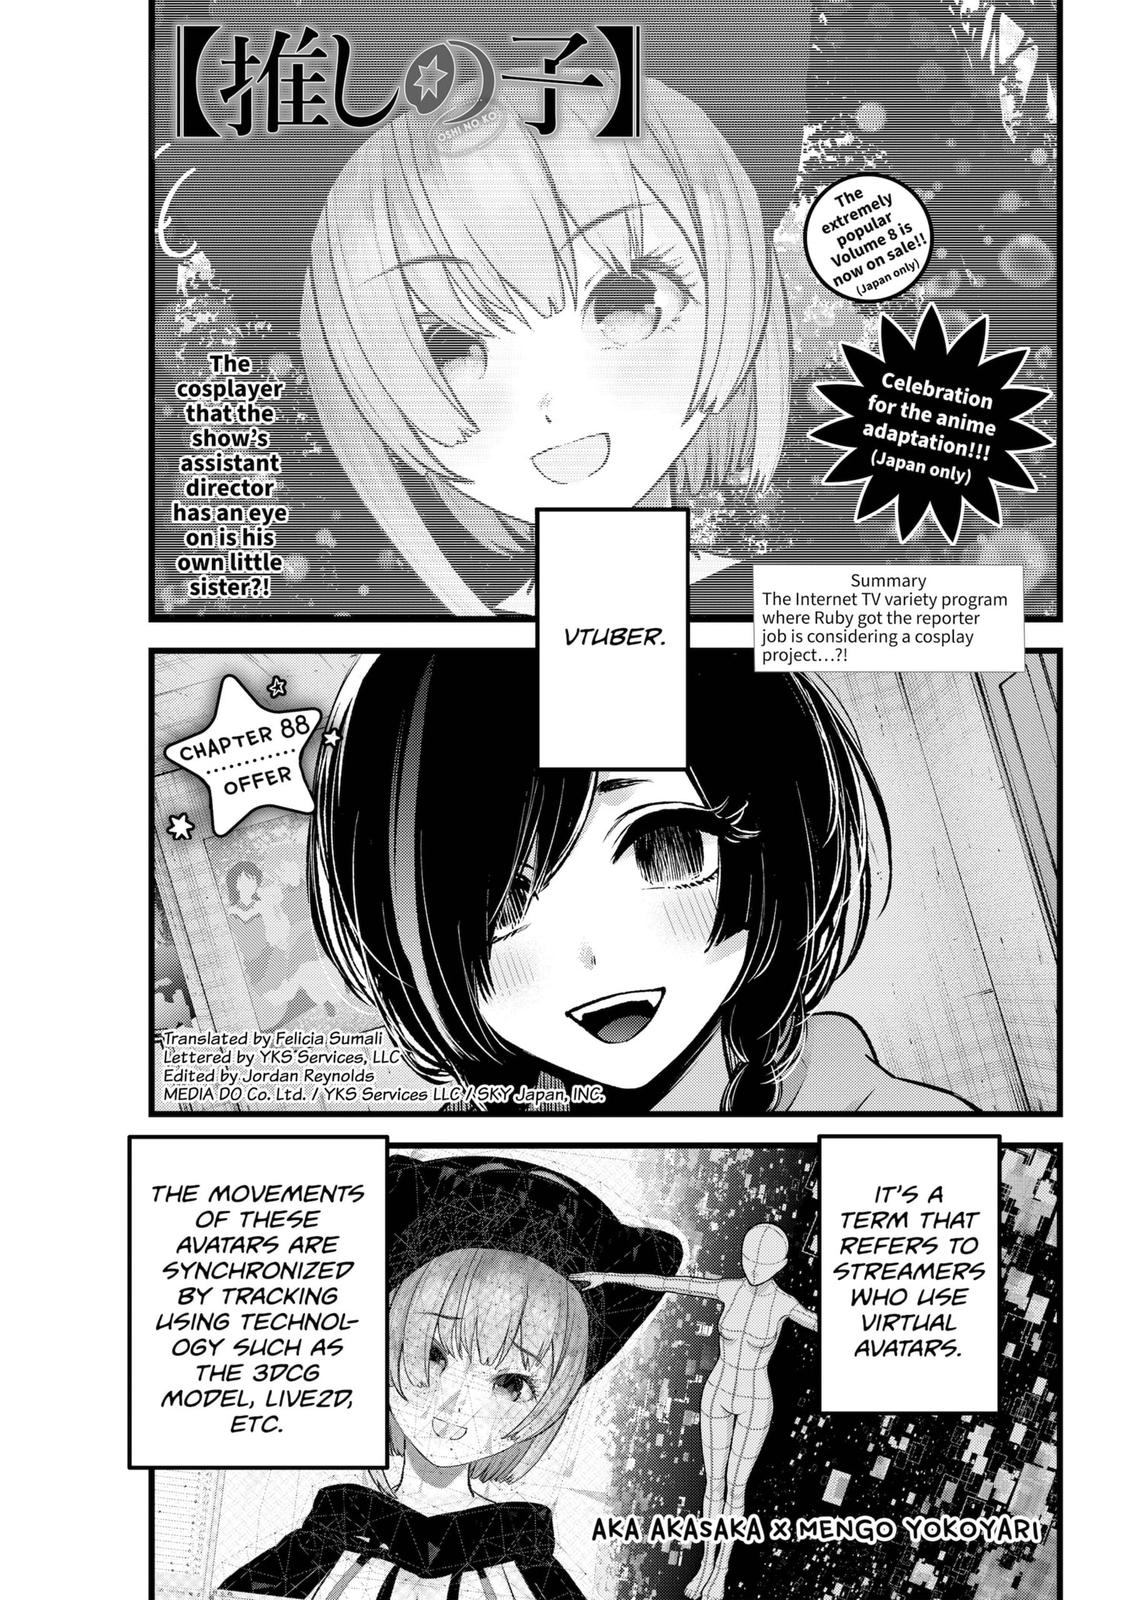 Oshi no ko, Chapter 1 - Oshi no ko Manga Online